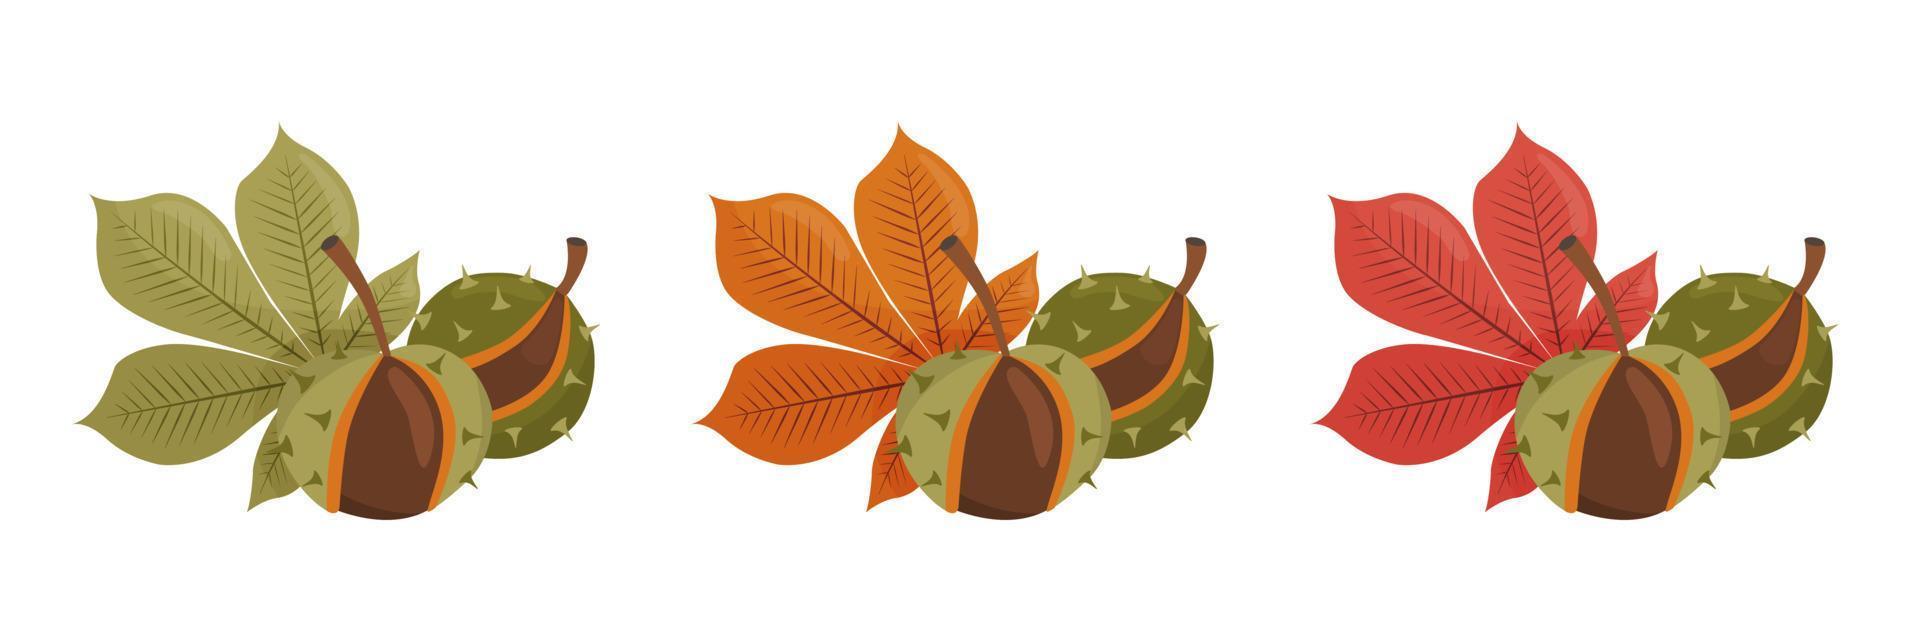 colección otoño de castañas con hojas. ilustración vectorial aislada sobre fondo blanco. vector